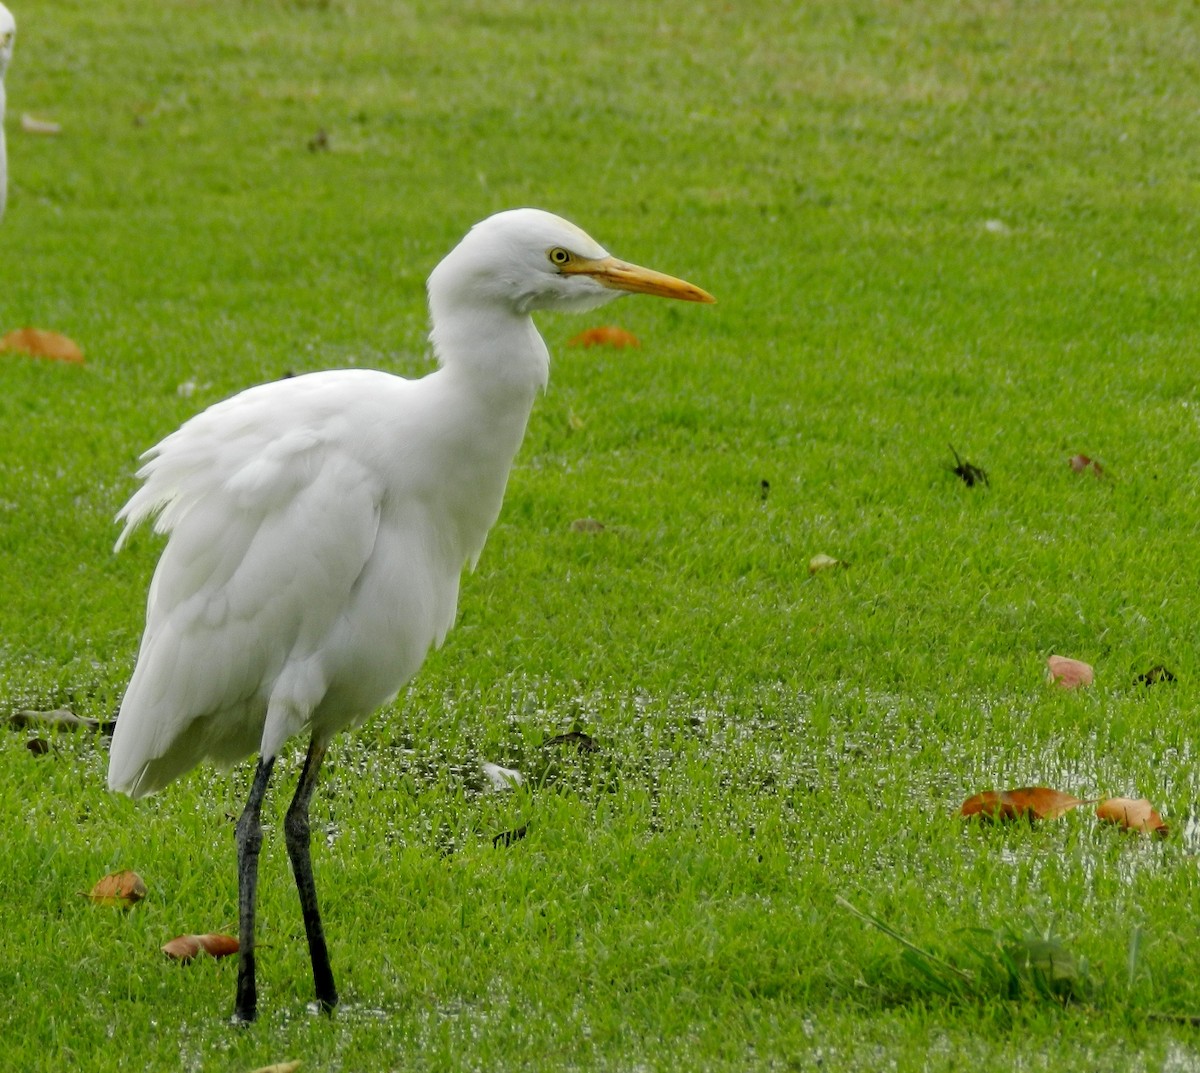 Eastern Cattle Egret - CHANDRA BHUSHAN